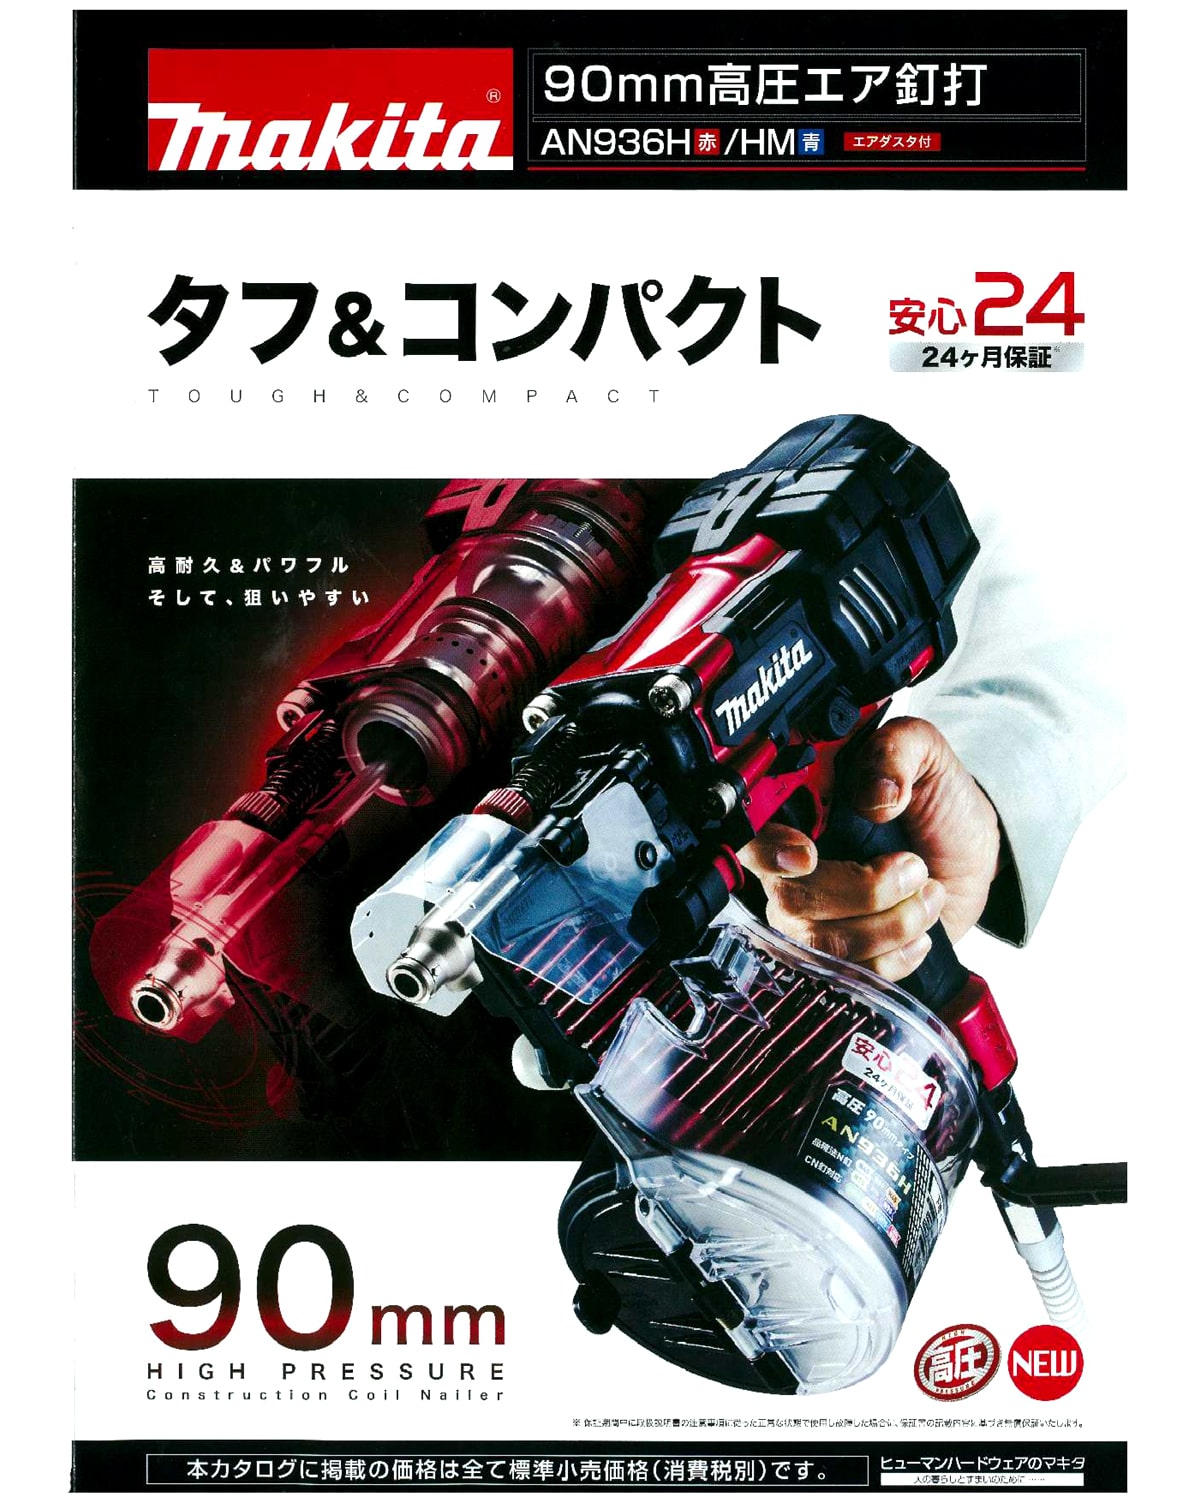 マキタ AN936H 90mm高圧エア釘打ち機 / AN936HM